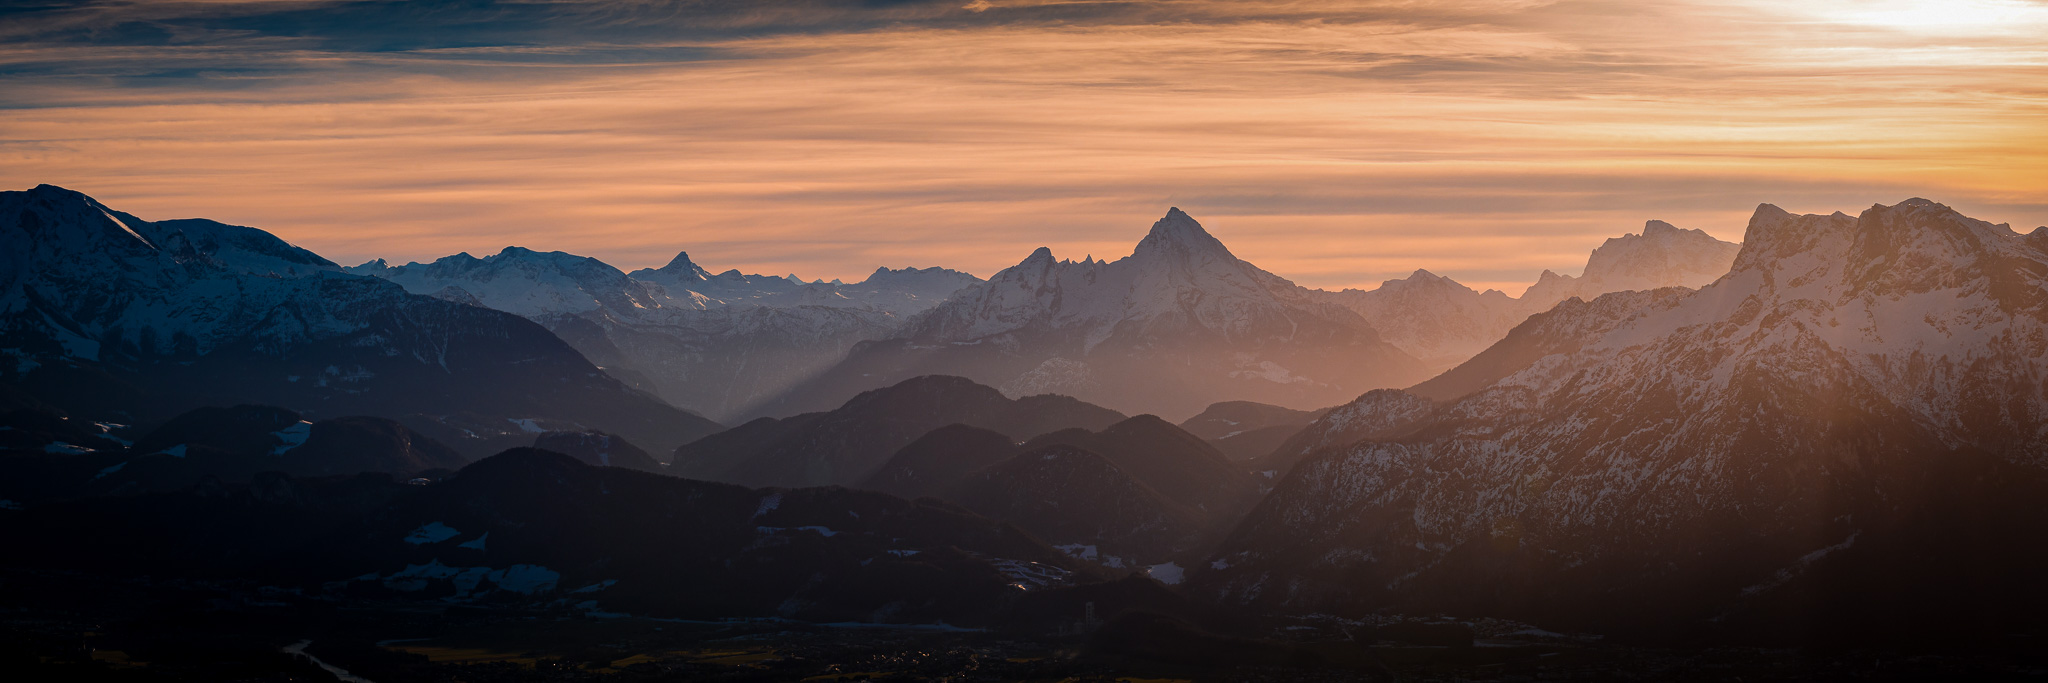 Panorama vom Watzmann in Berchtesgaden beim Sonnenuntergang